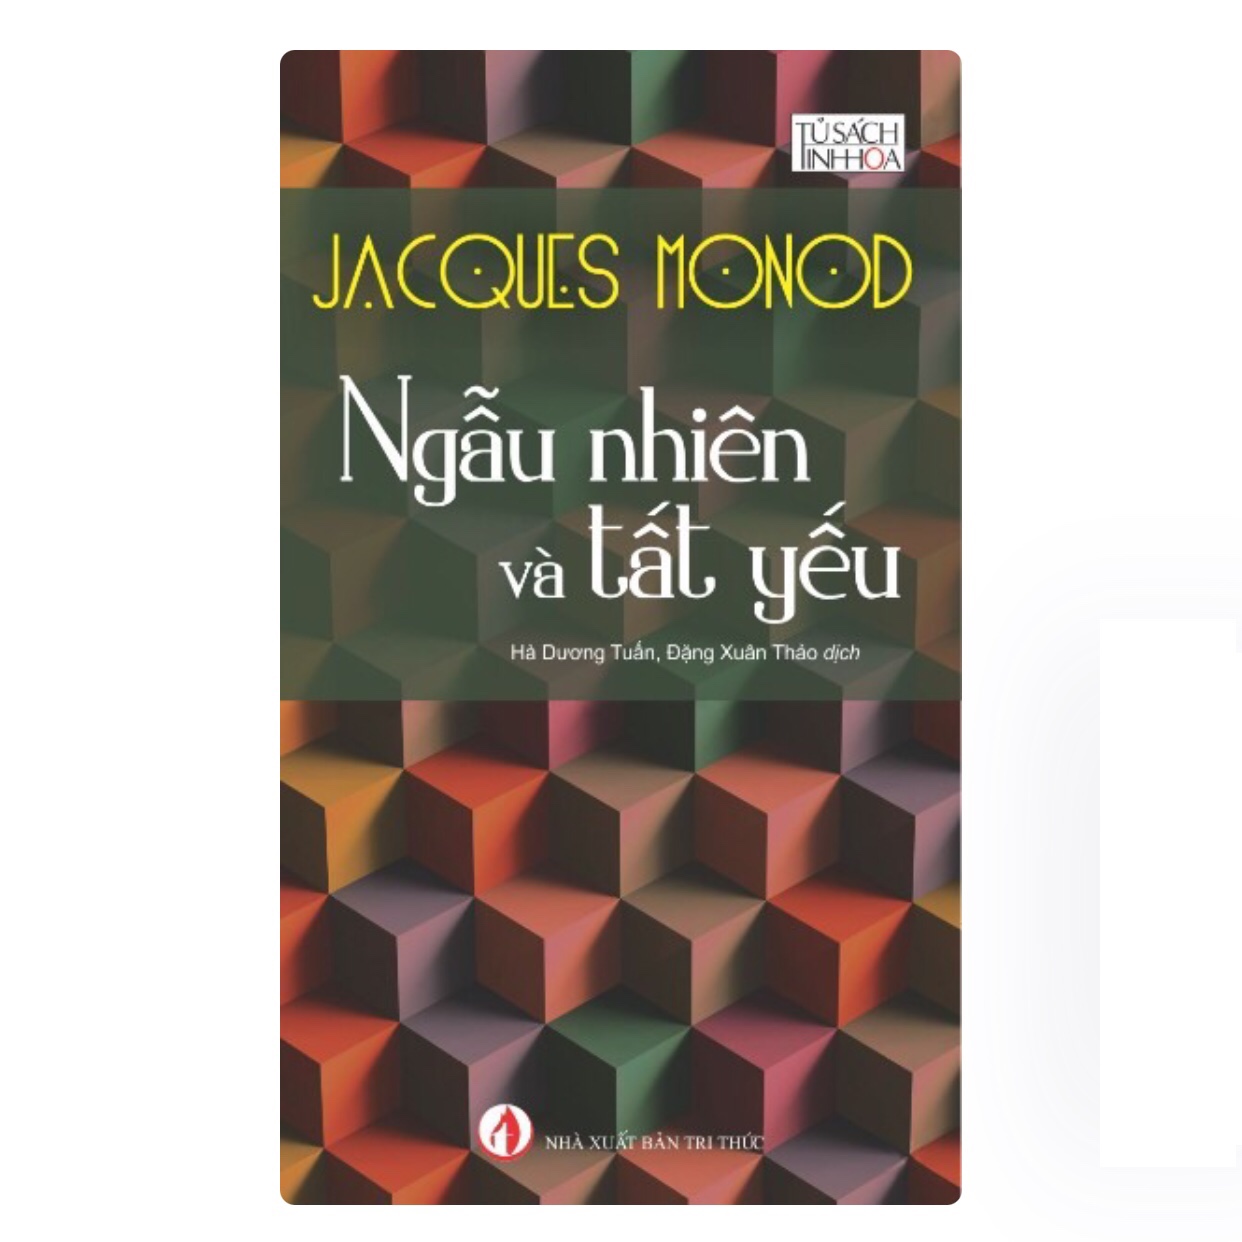 NGẪU NHIÊN VÀ TẤT YẾU - Jacques Monod - Hà Dương Tuấn, Đặng Xuân Thảo dịch - (bìa mềm)